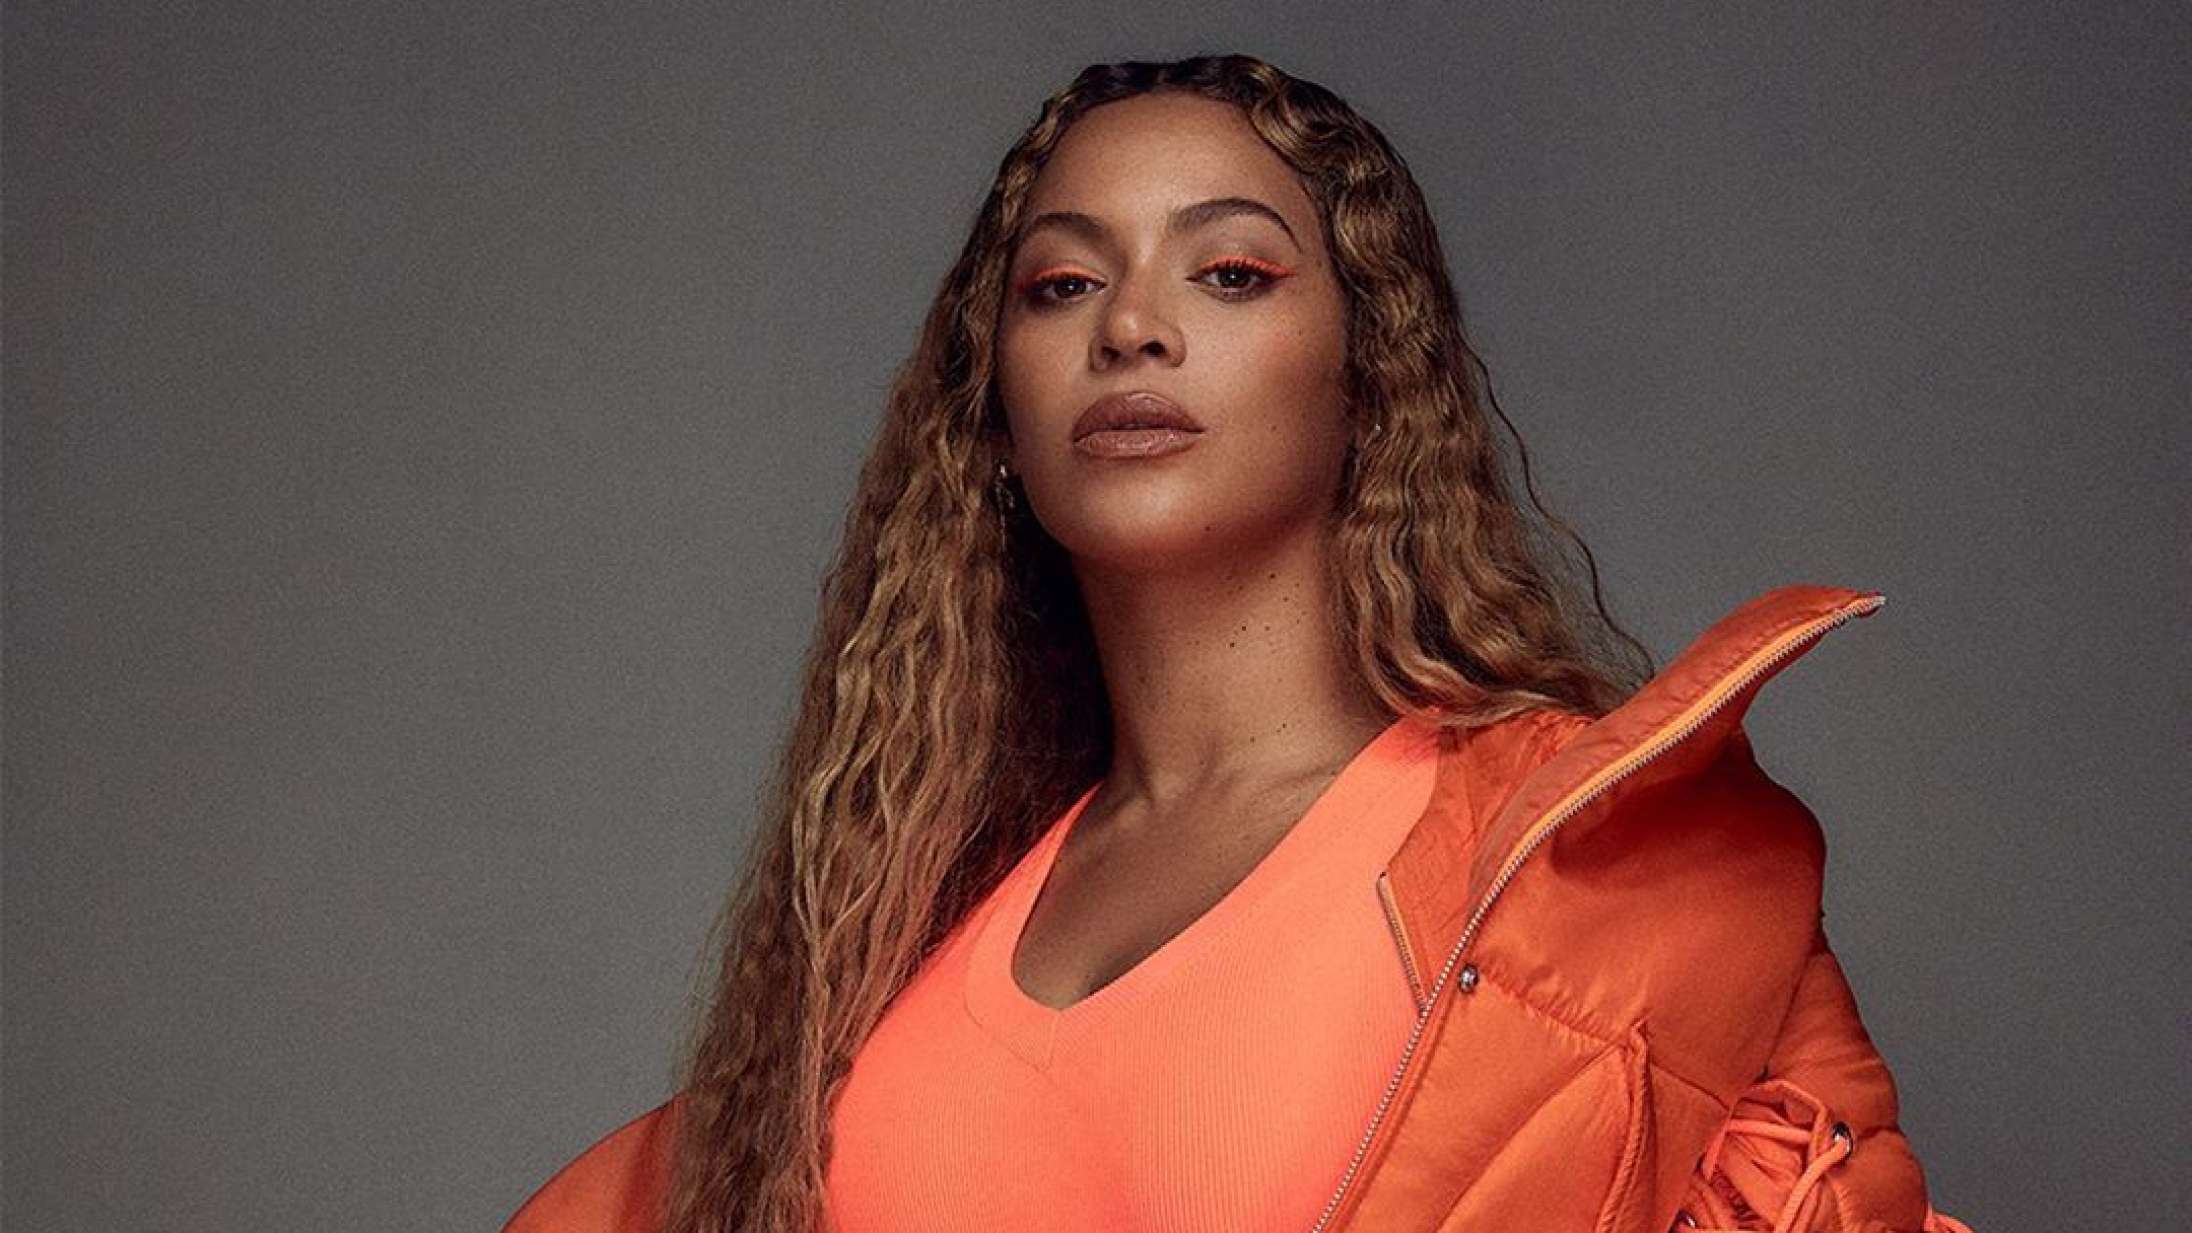 Beyoncé opfordrer til handling efter mordet på George Floyd: »Stop de meningsløse menneskedrab«